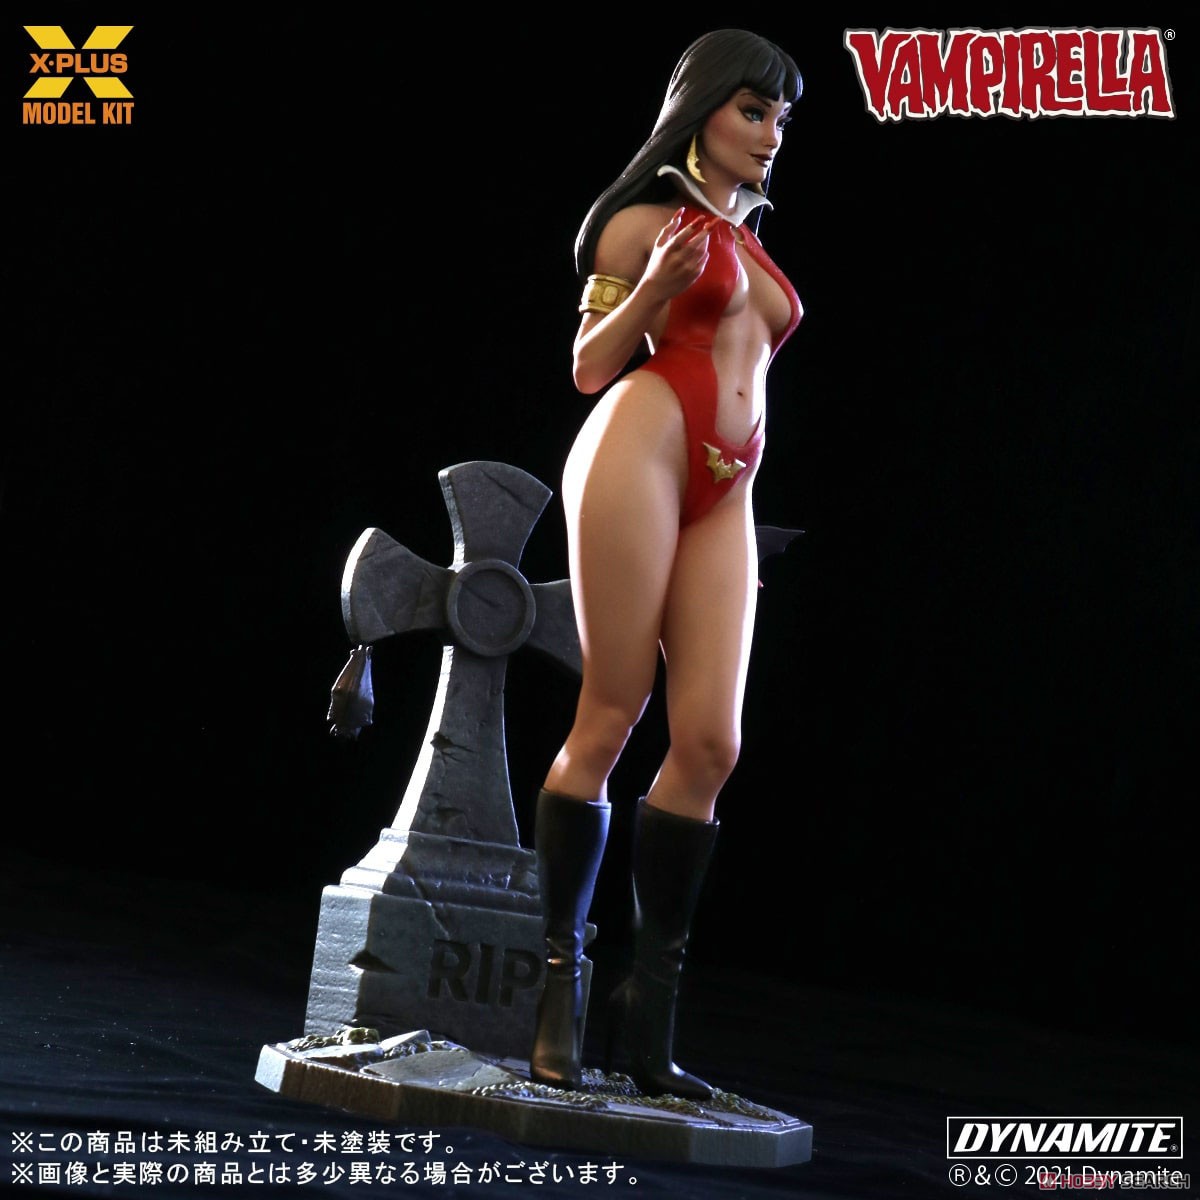 Vampirella『ヴァンピレラ 』1/8スケール プラスチック モデルキット-005